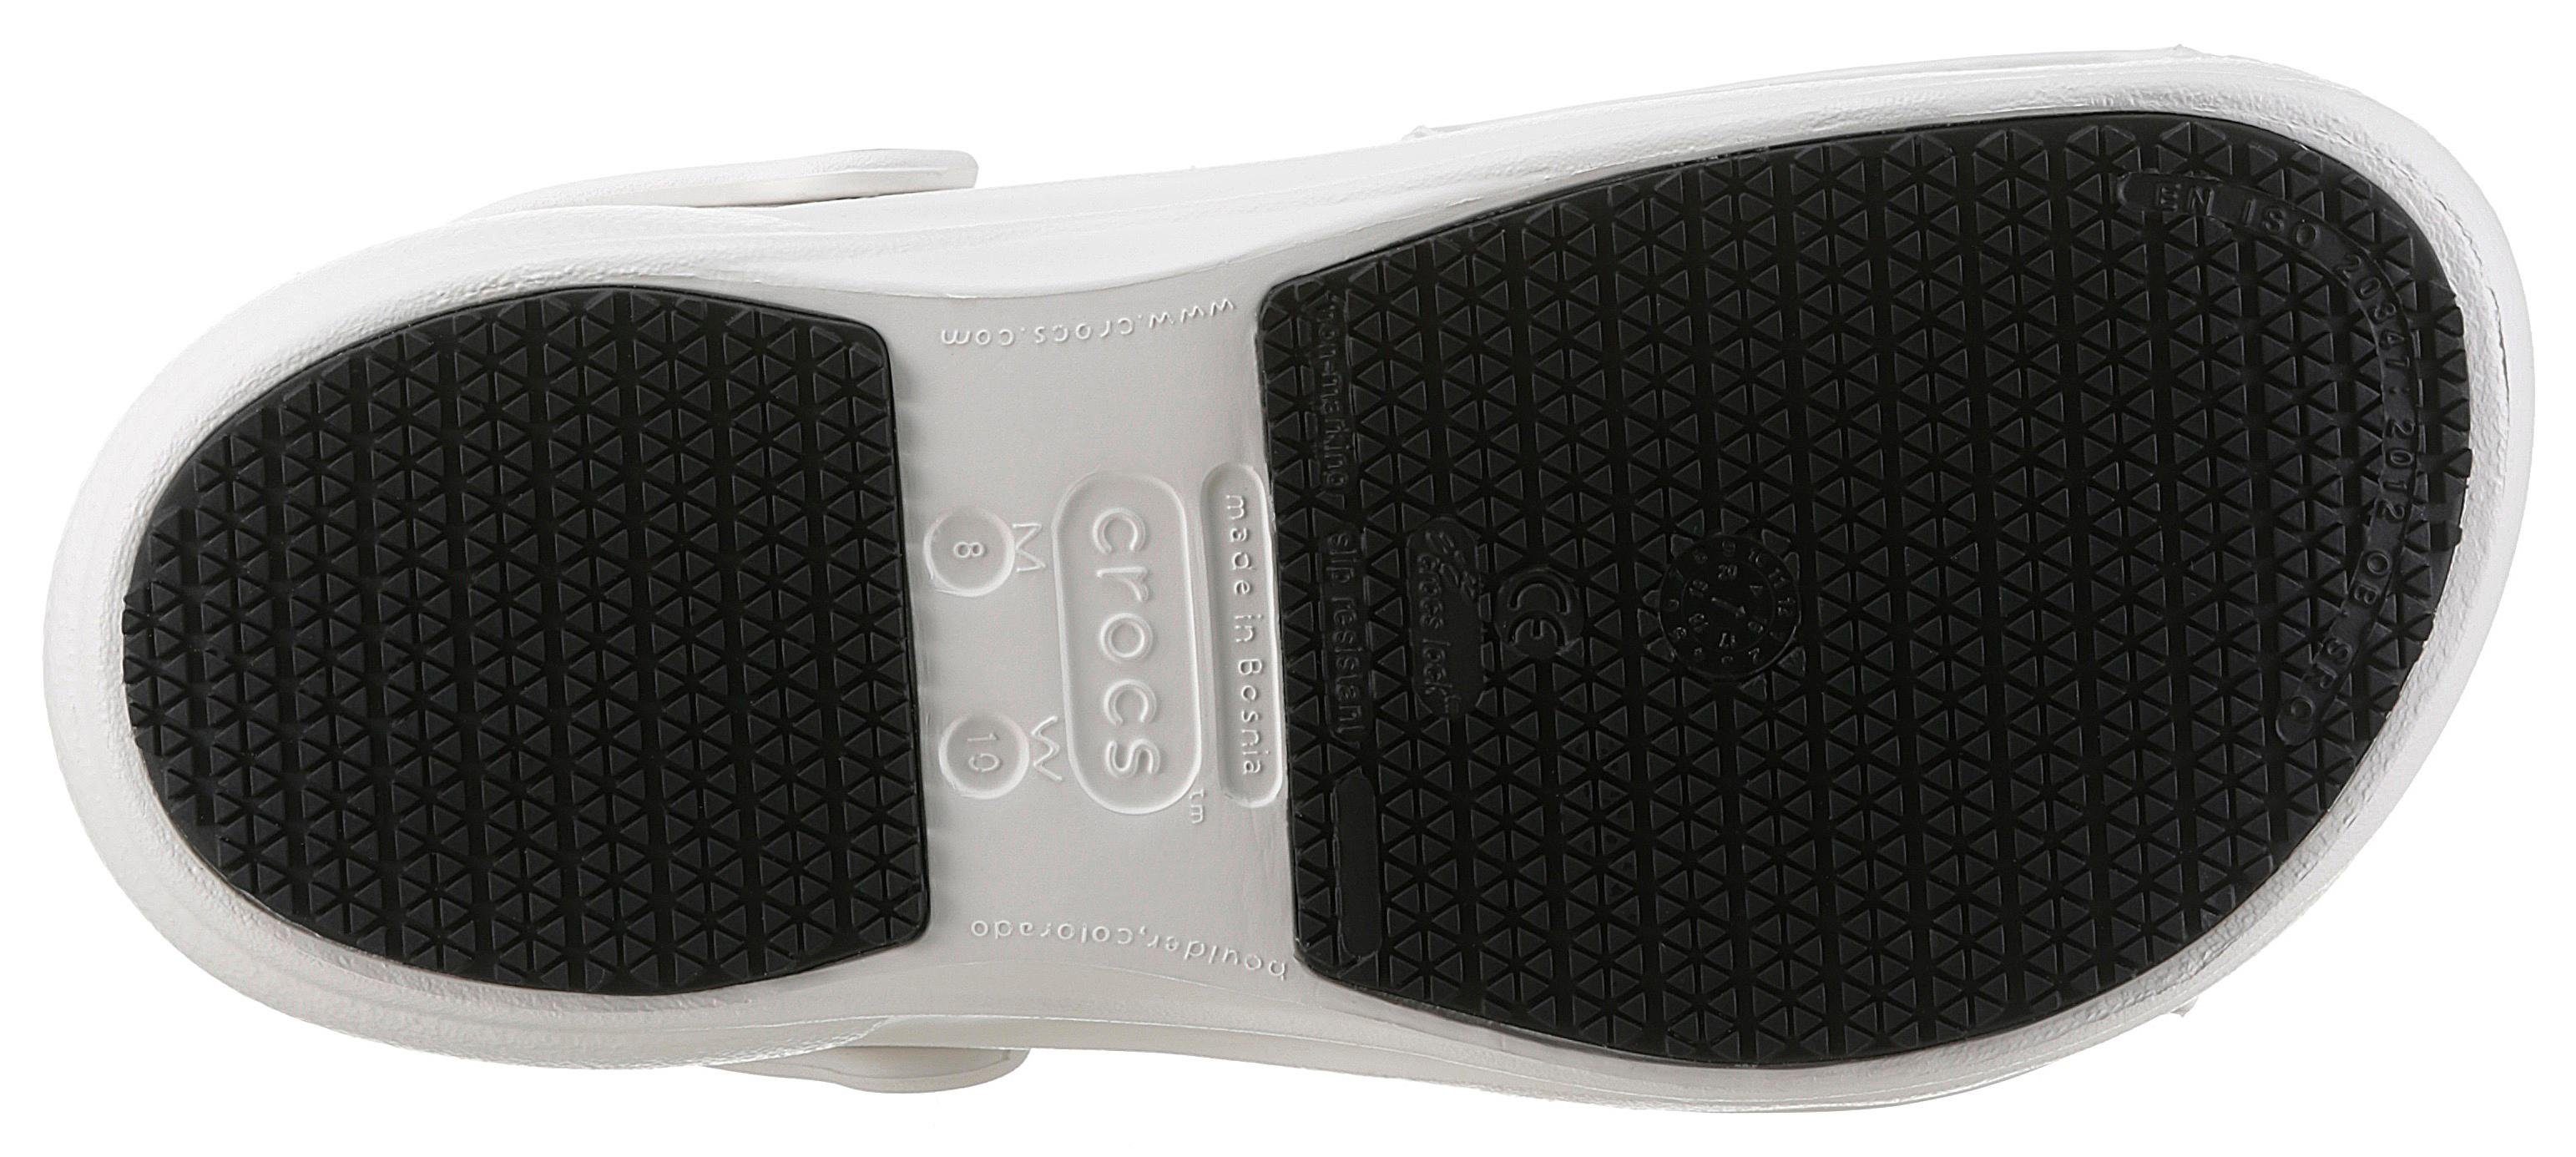 Crocs Clog BISTRO Fußbereich mit geschlossenem weiß-offwhite